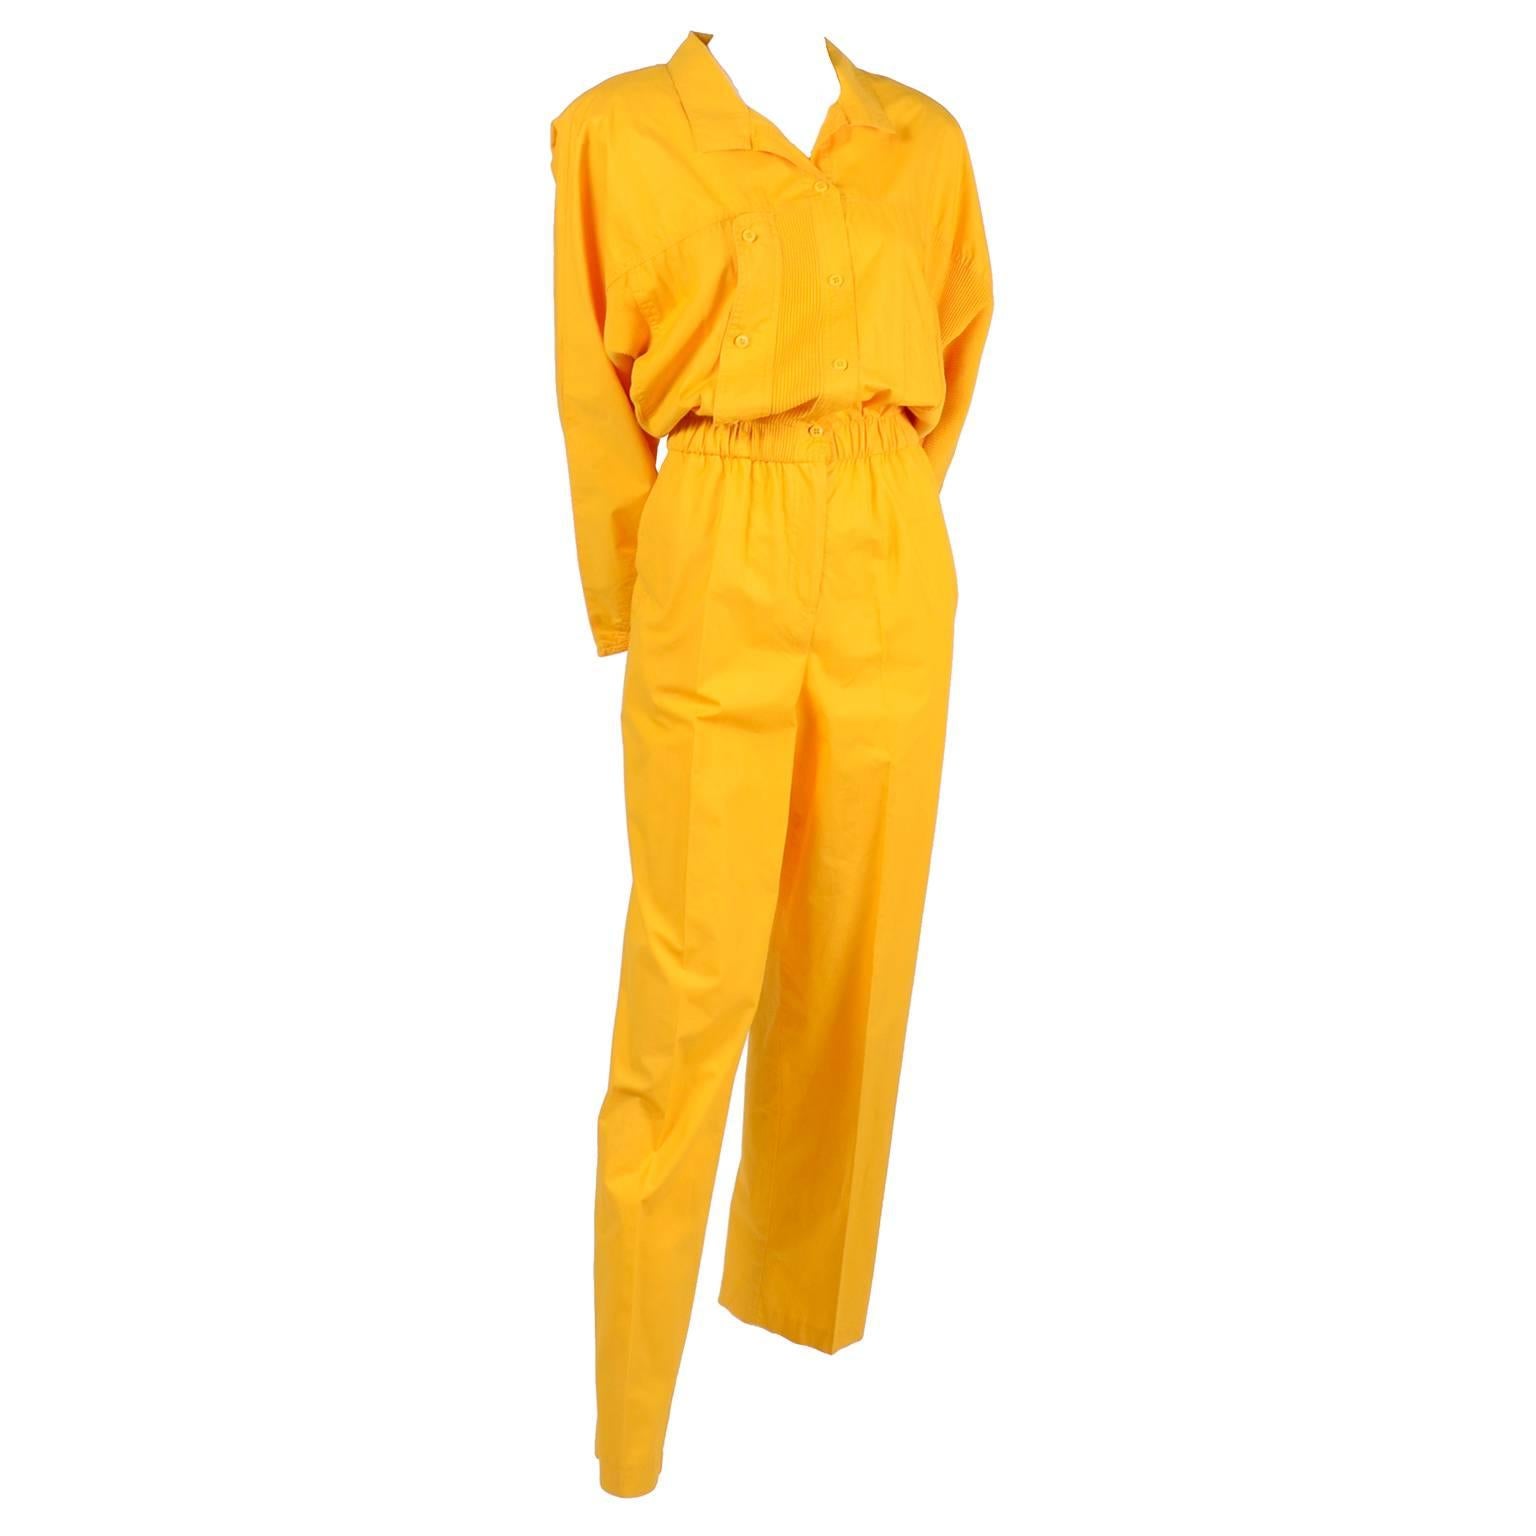 1980s Saint Germain Paris Vintage Jumpsuit in Yellow Cotton With Pockets 8/10